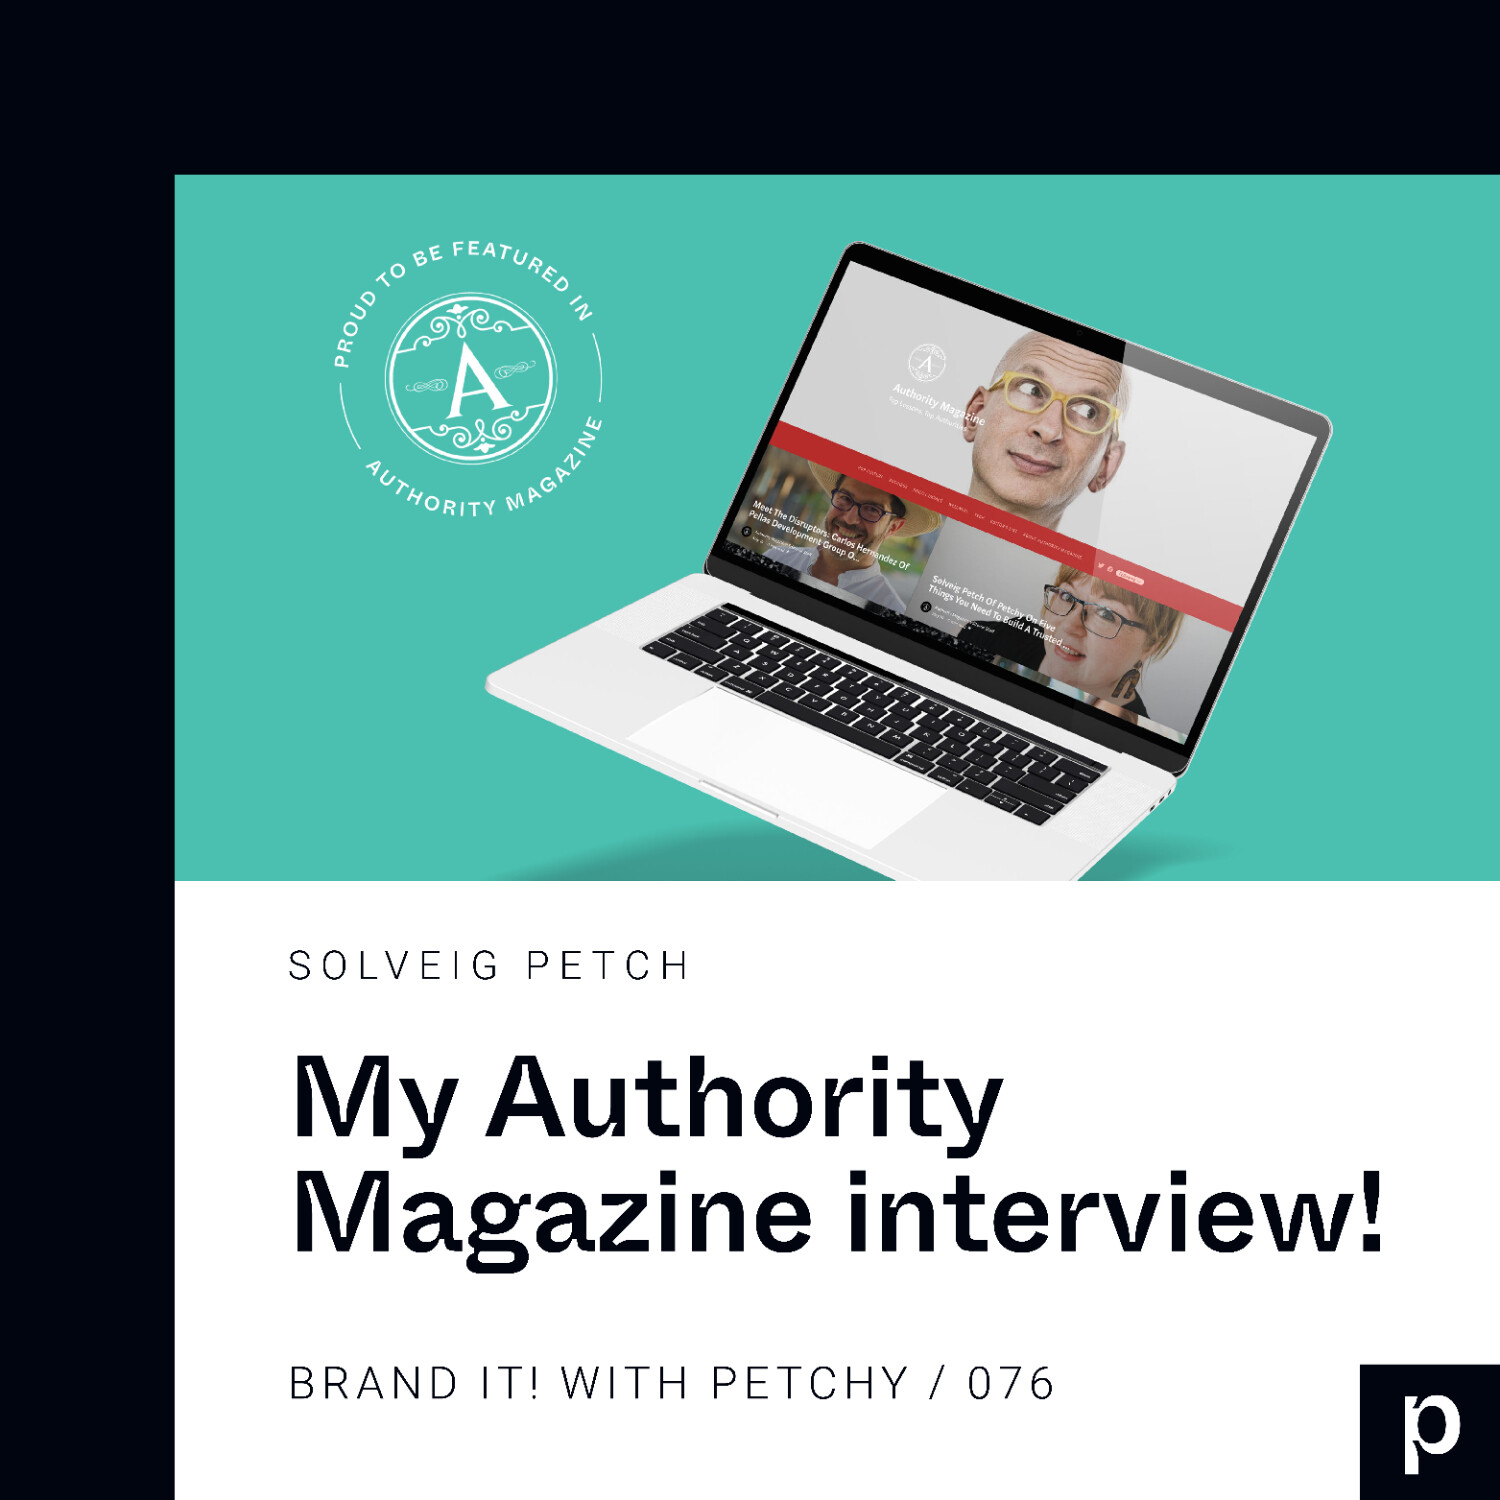 My Authority Magazine interview!